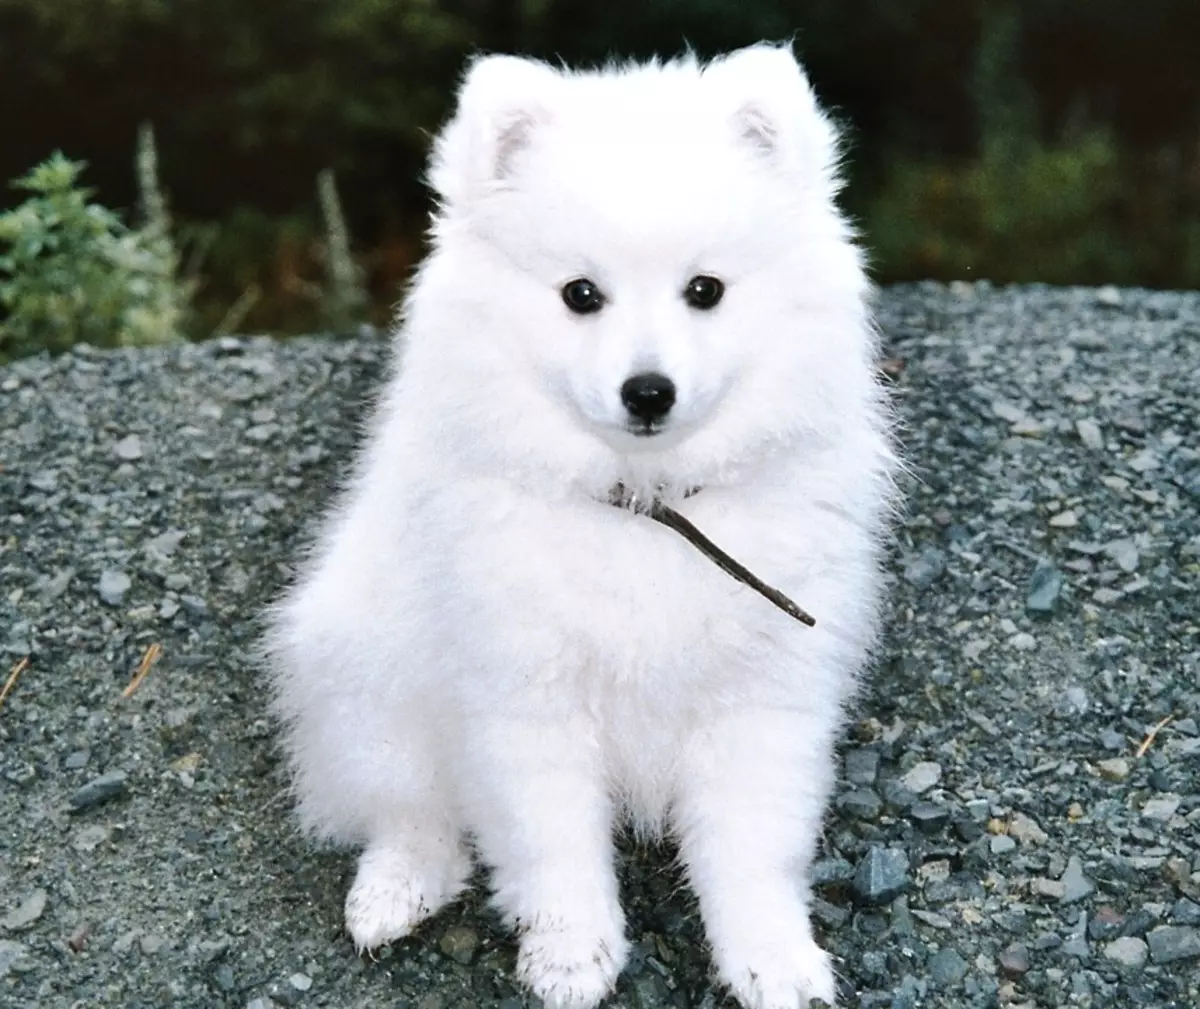 Perros blancos mullidos (37 fotos): Representantes de razas grandes y pequeñas. ¿Cómo se llaman los perros peluditos? Raza cachorros con lana larga. 12115_12